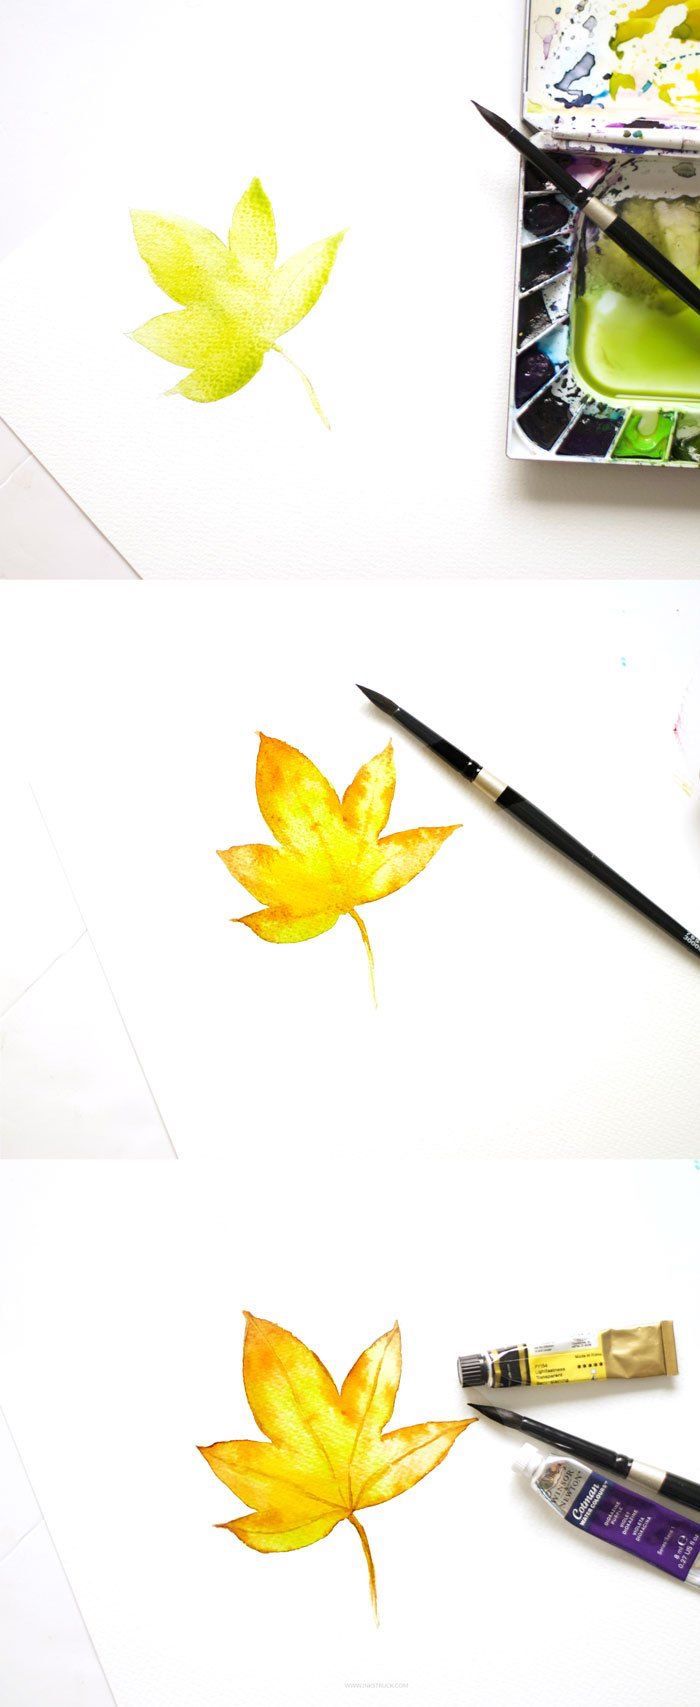 Apprendre à dessiner une feuille d'arbre automnal aquarelle, dessin feuille d'arbre, feuille d'automne dessin simple